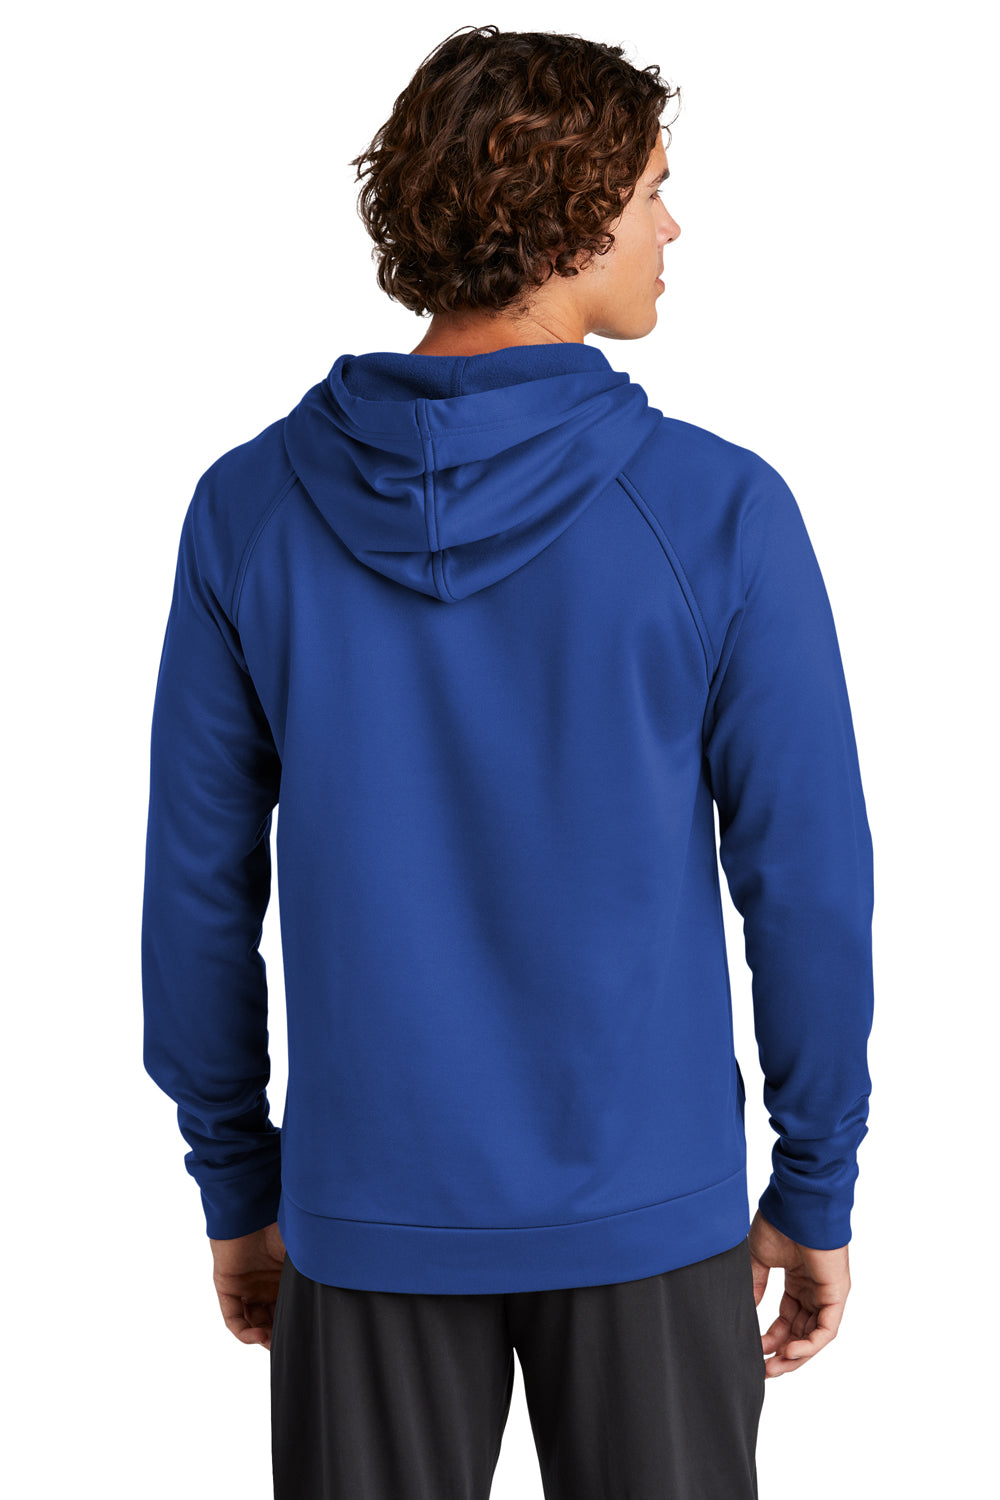 Sport-Tek ST730 Mens Re-Compete Fleece Hooded Sweatshirt Hoodie True Royal Blue Back